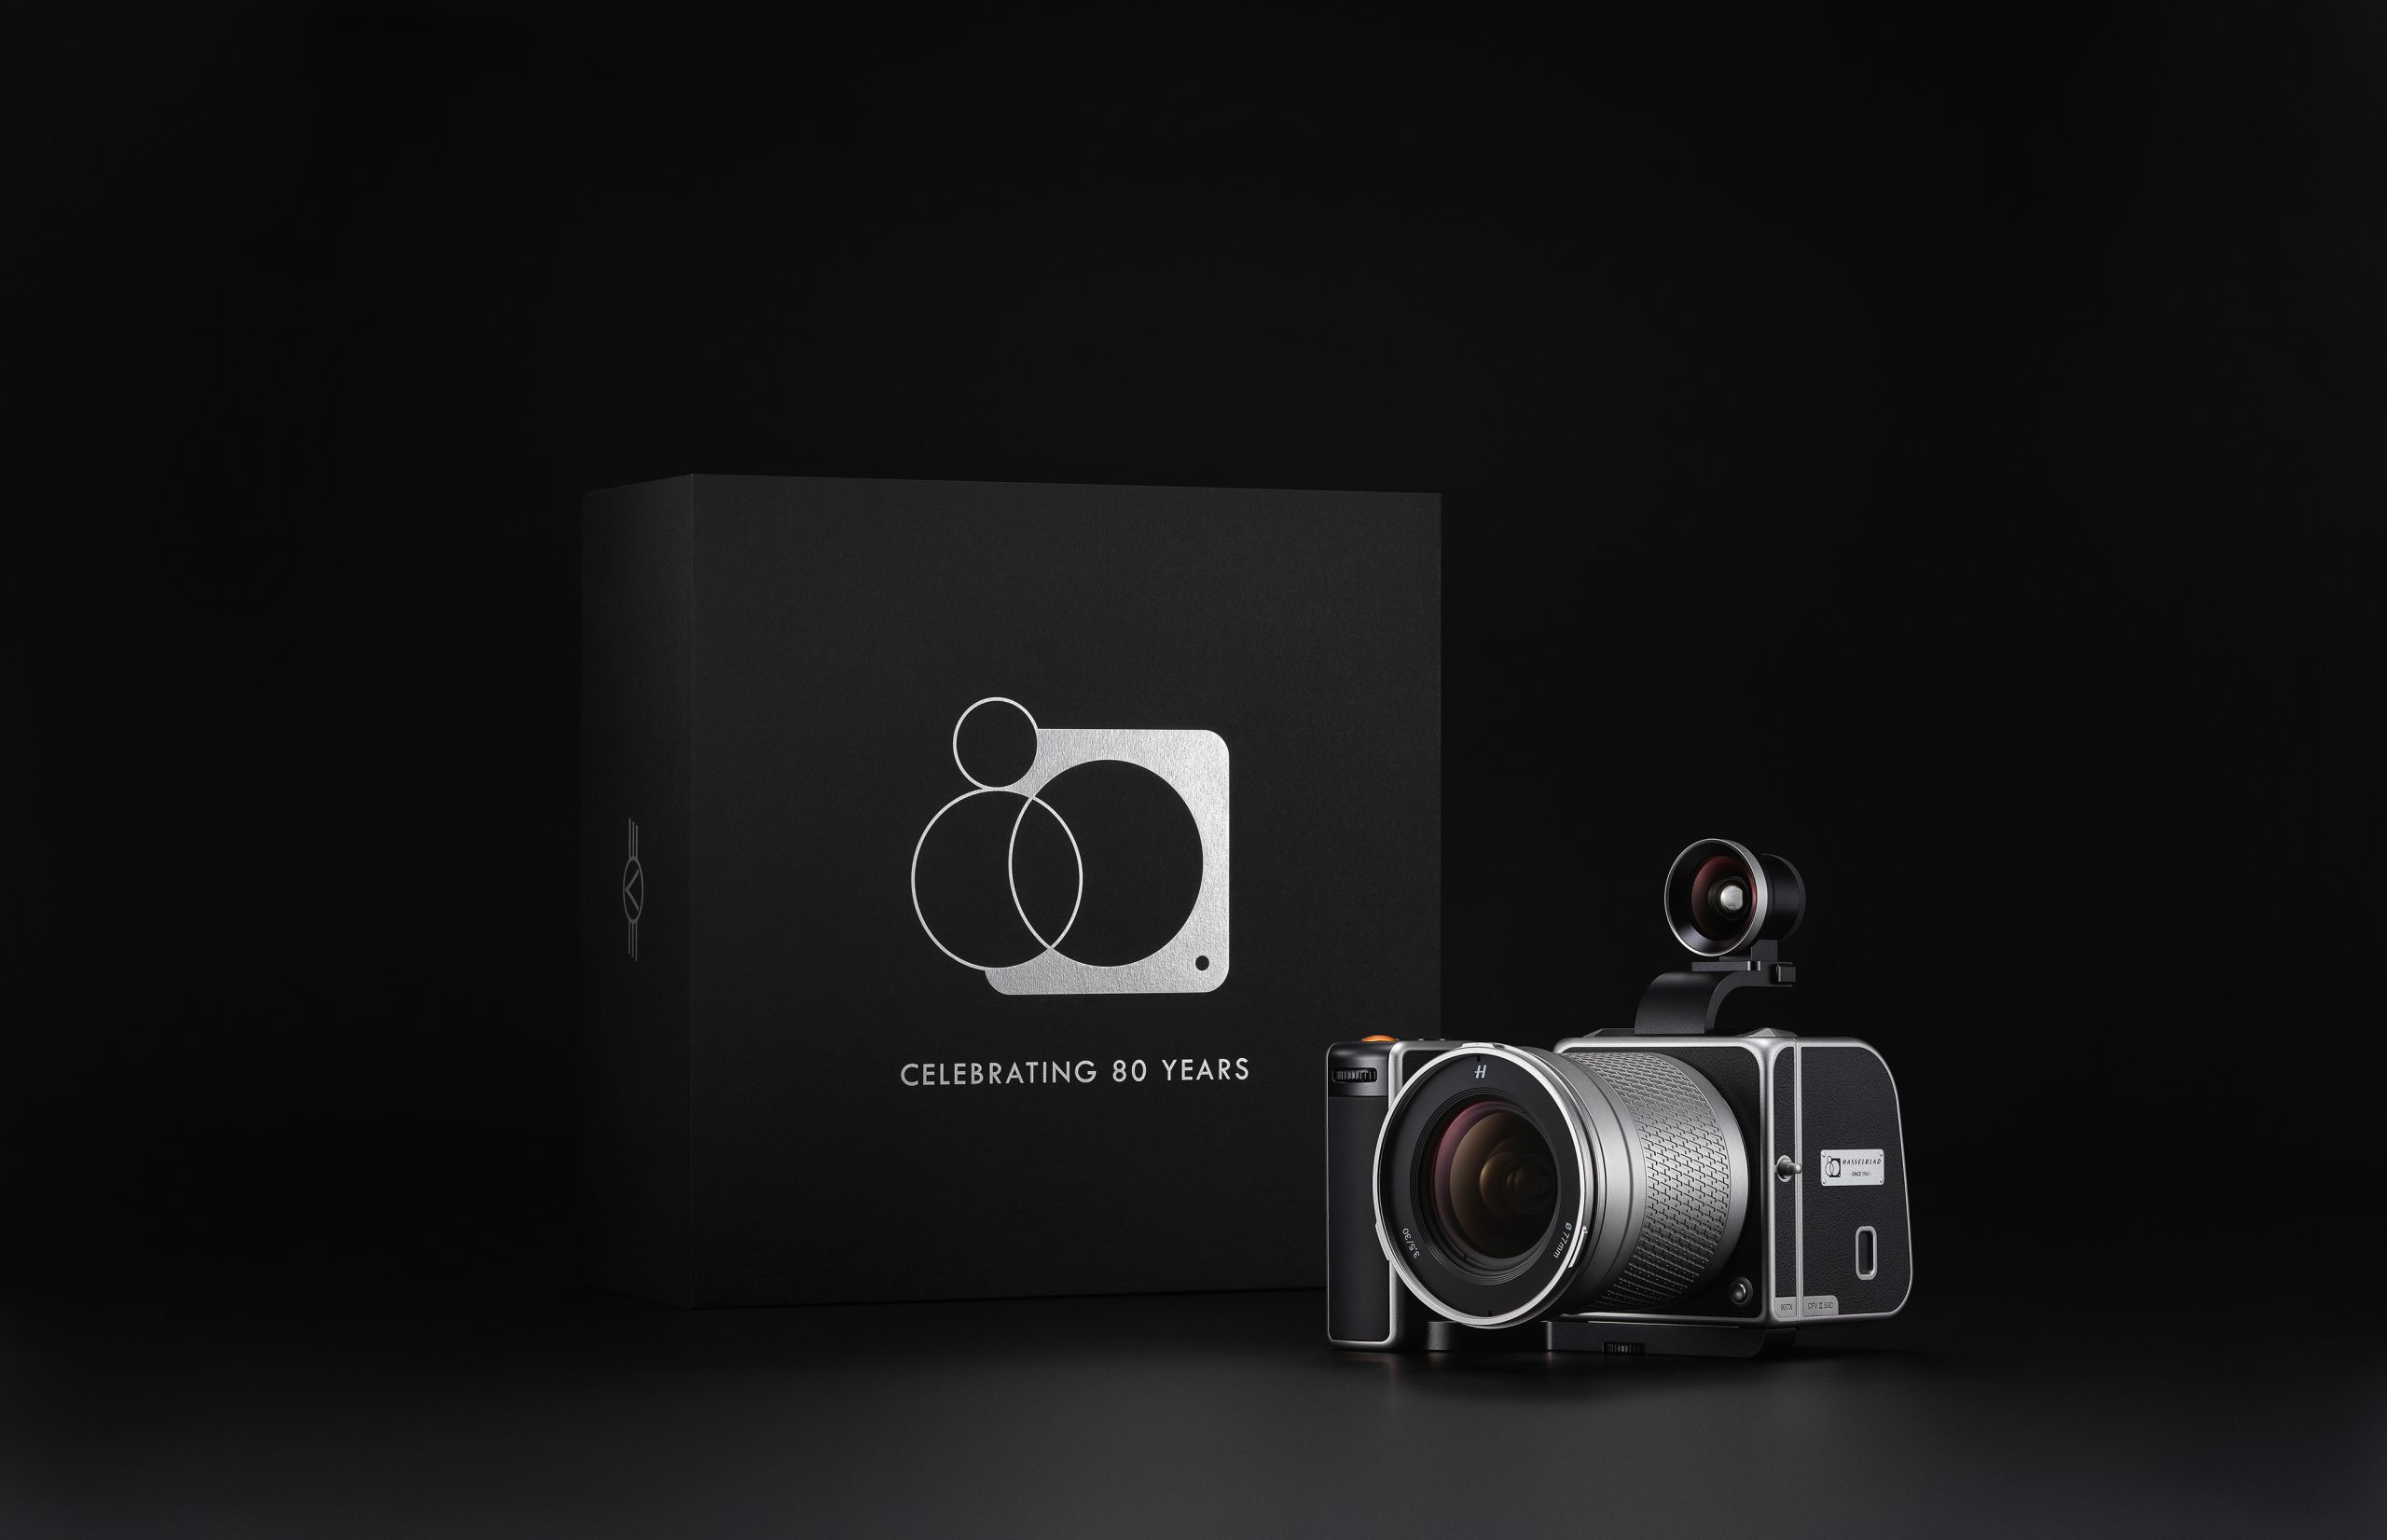 Hasselblad ra mắt máy ảnh 907X Anniversary Edition Kit kỉ niệm 80 năm với giá 15,000 USD